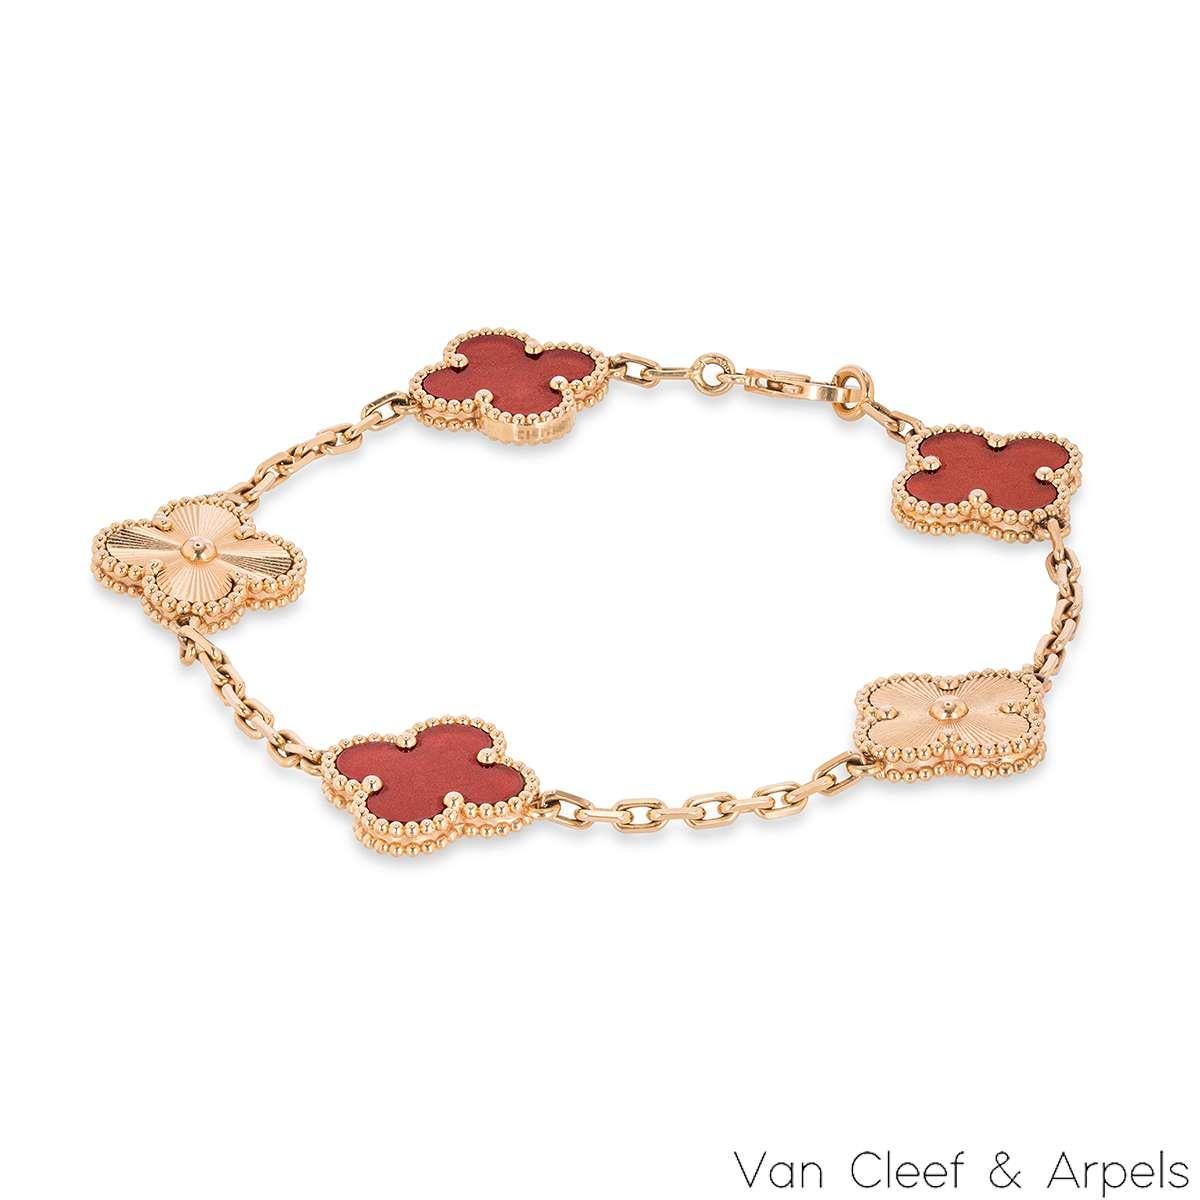 Un bracelet en or rose 18 carats, cornaline et guillochage de la collection Vintage Alhambra de Van Cleef and Arpels. Le bracelet se compose de 5 motifs iconiques de trèfle alternés, 3 sont sertis d'incrustations de cornaline et les 2 autres